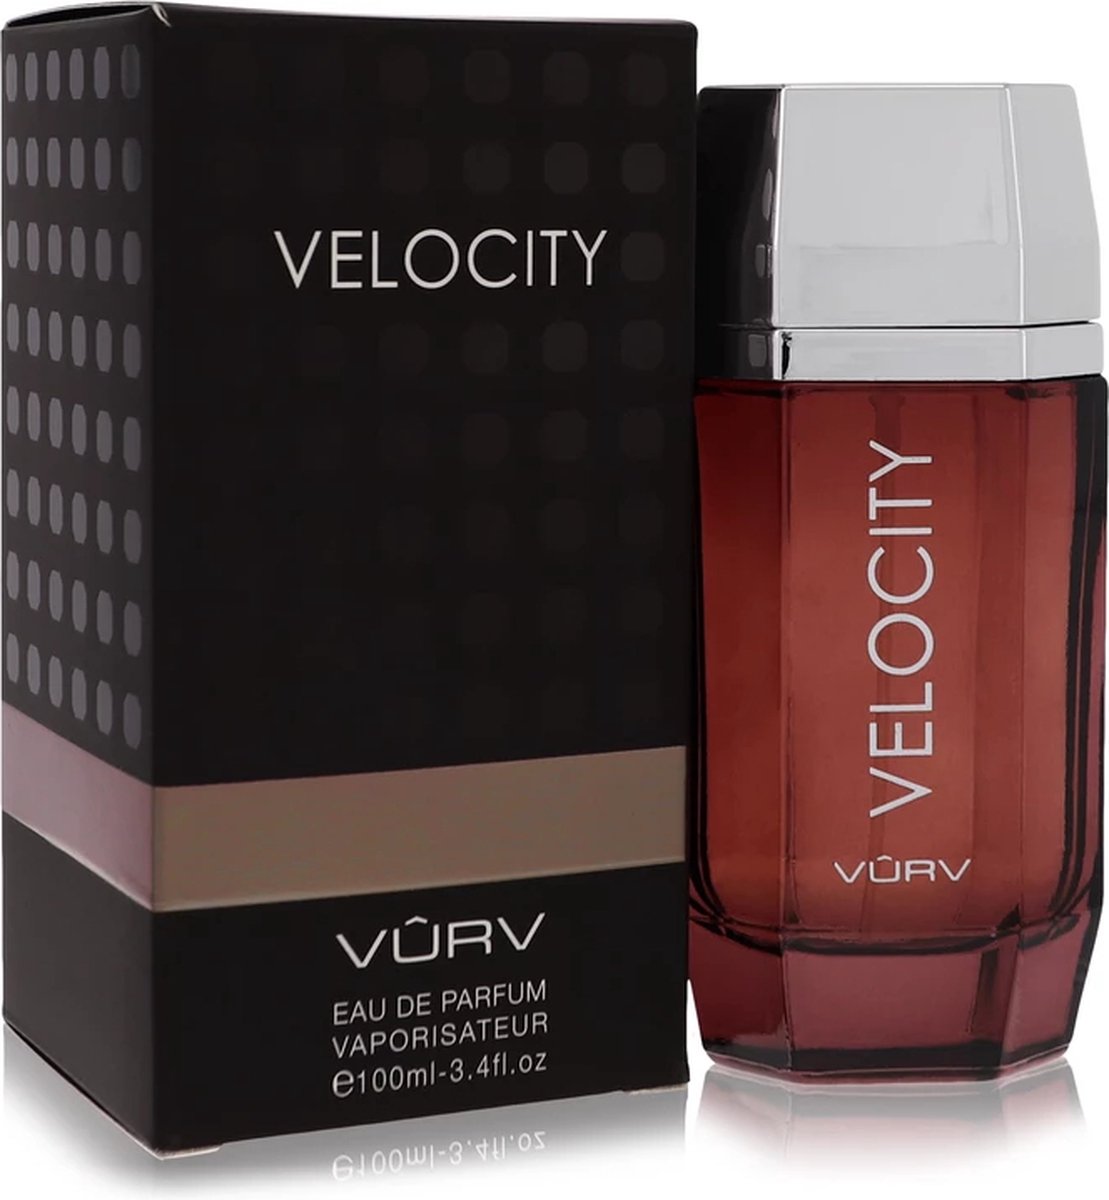 Vurv Velocity eau de parfum spray 100 ml